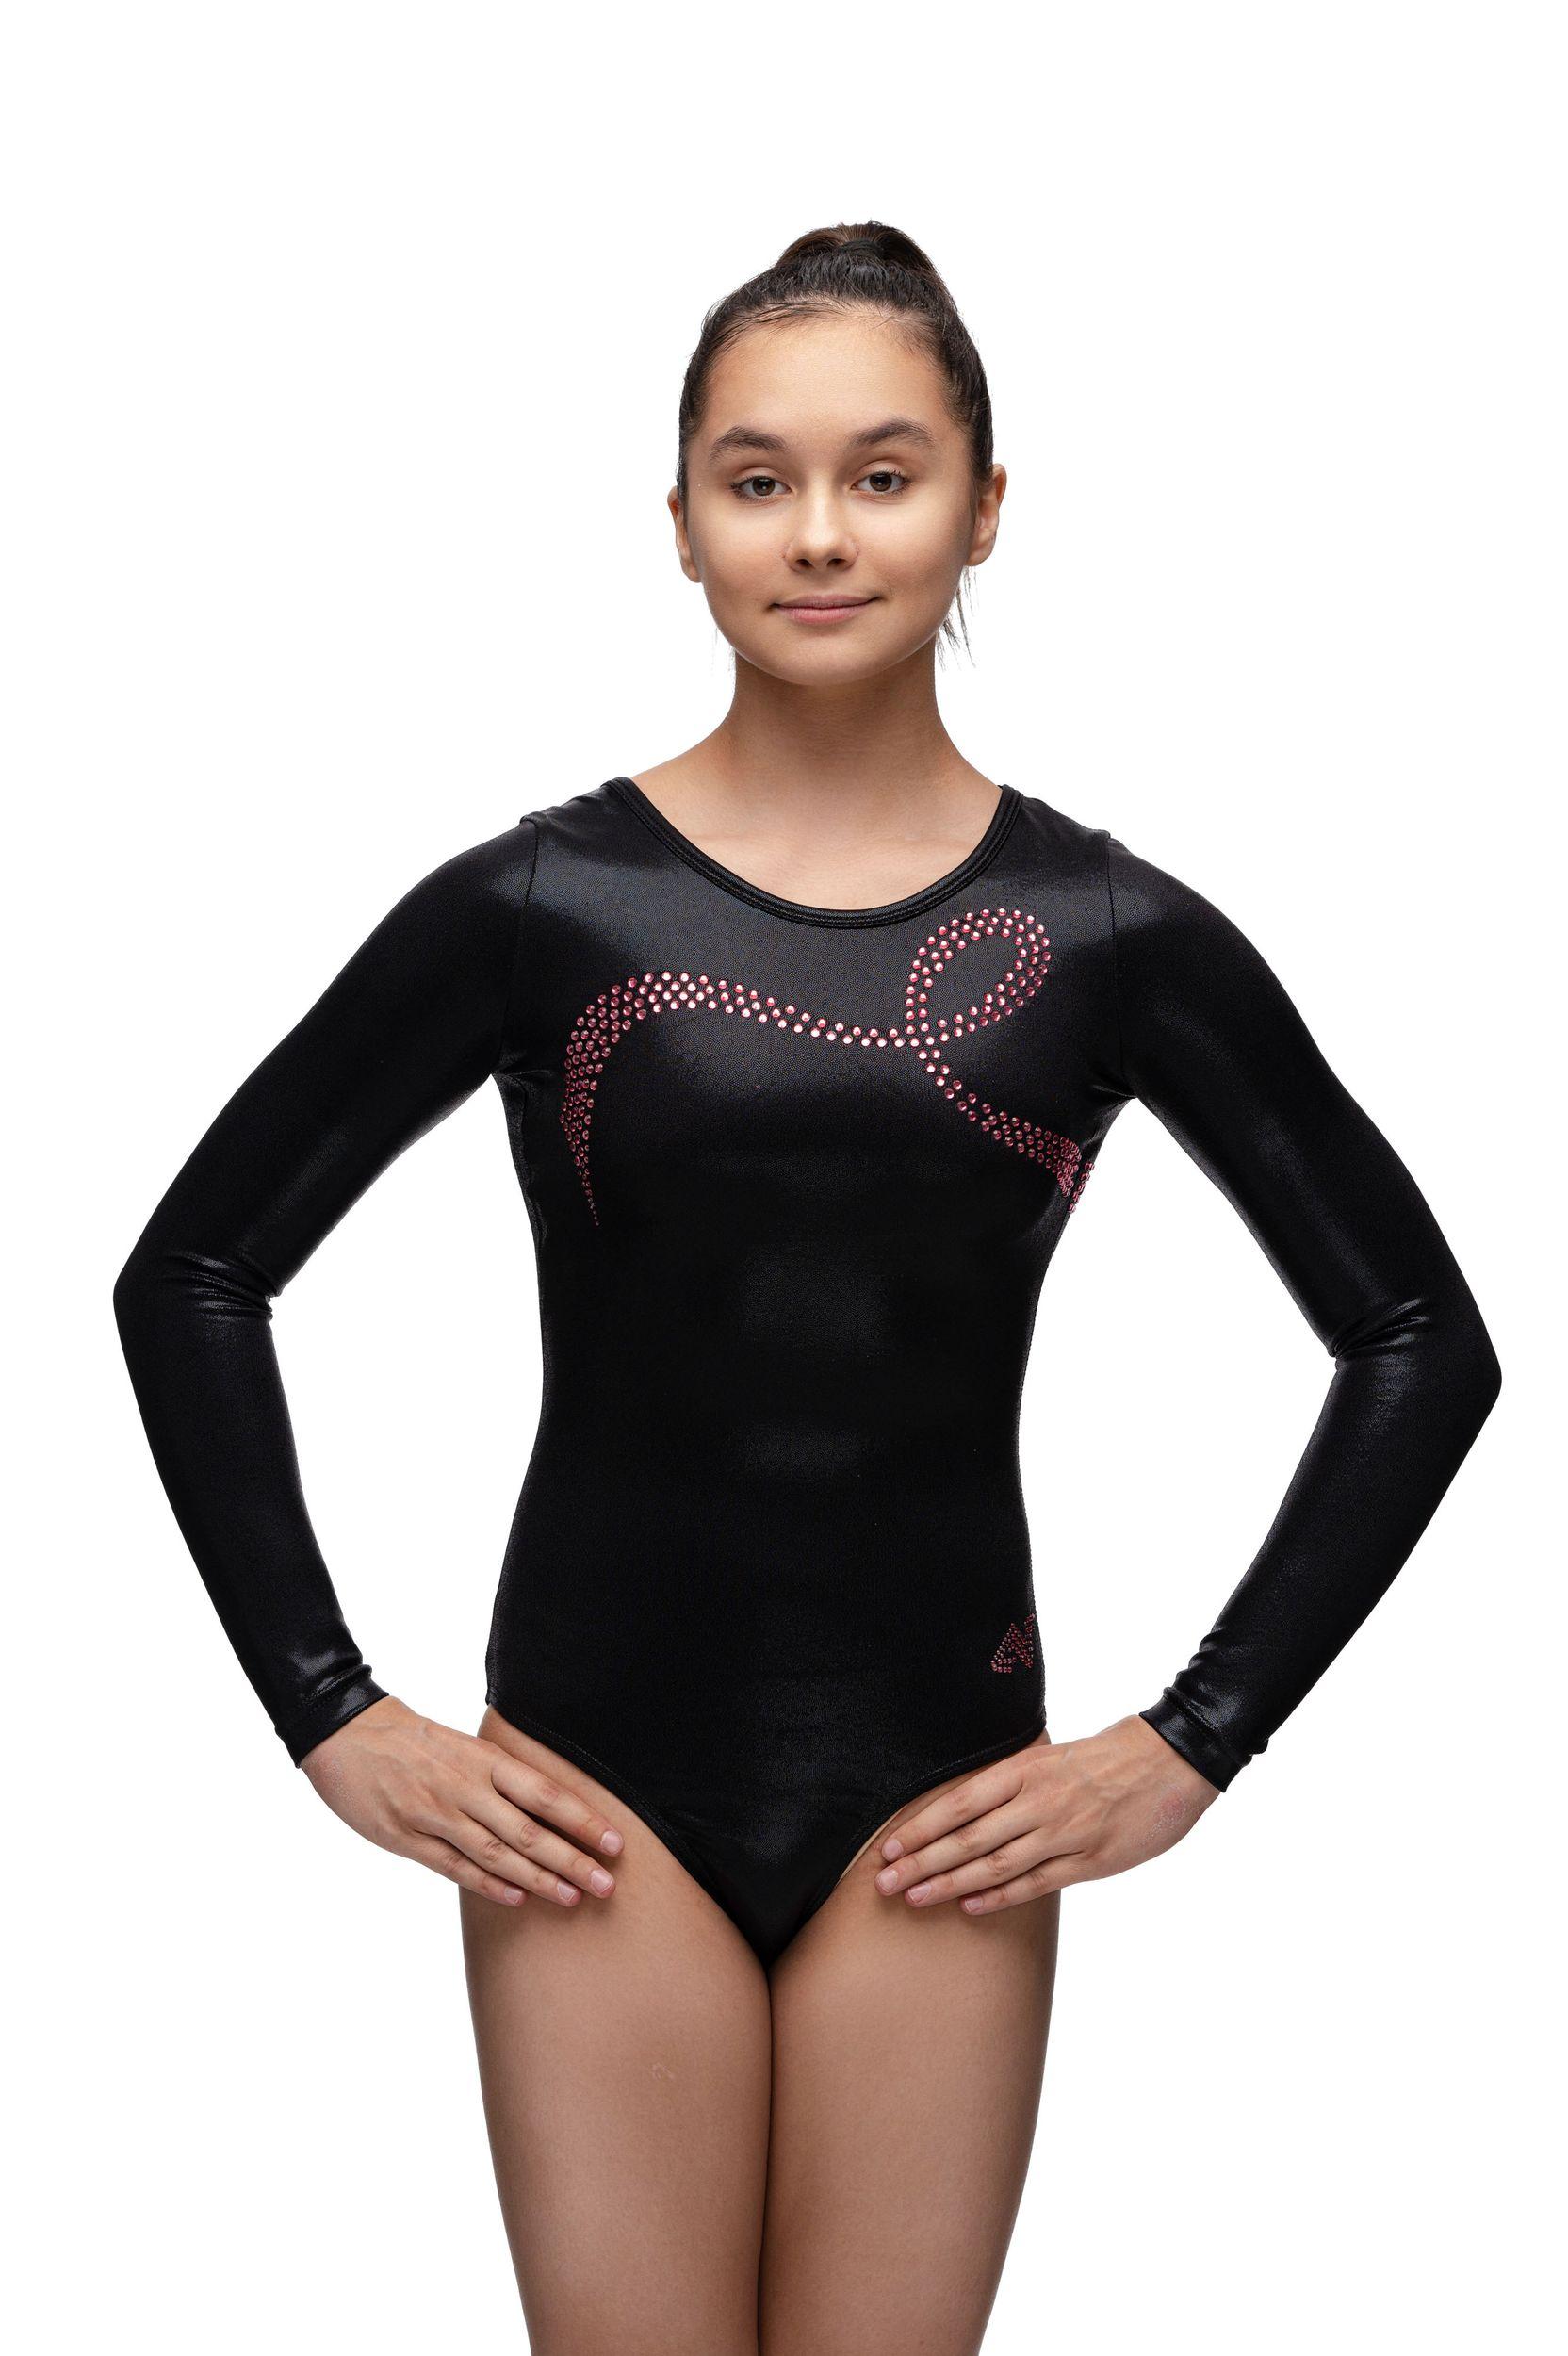 Купальник женский для спортивной гимнастики Dreamlight 6230 черный со стразами с рукавом